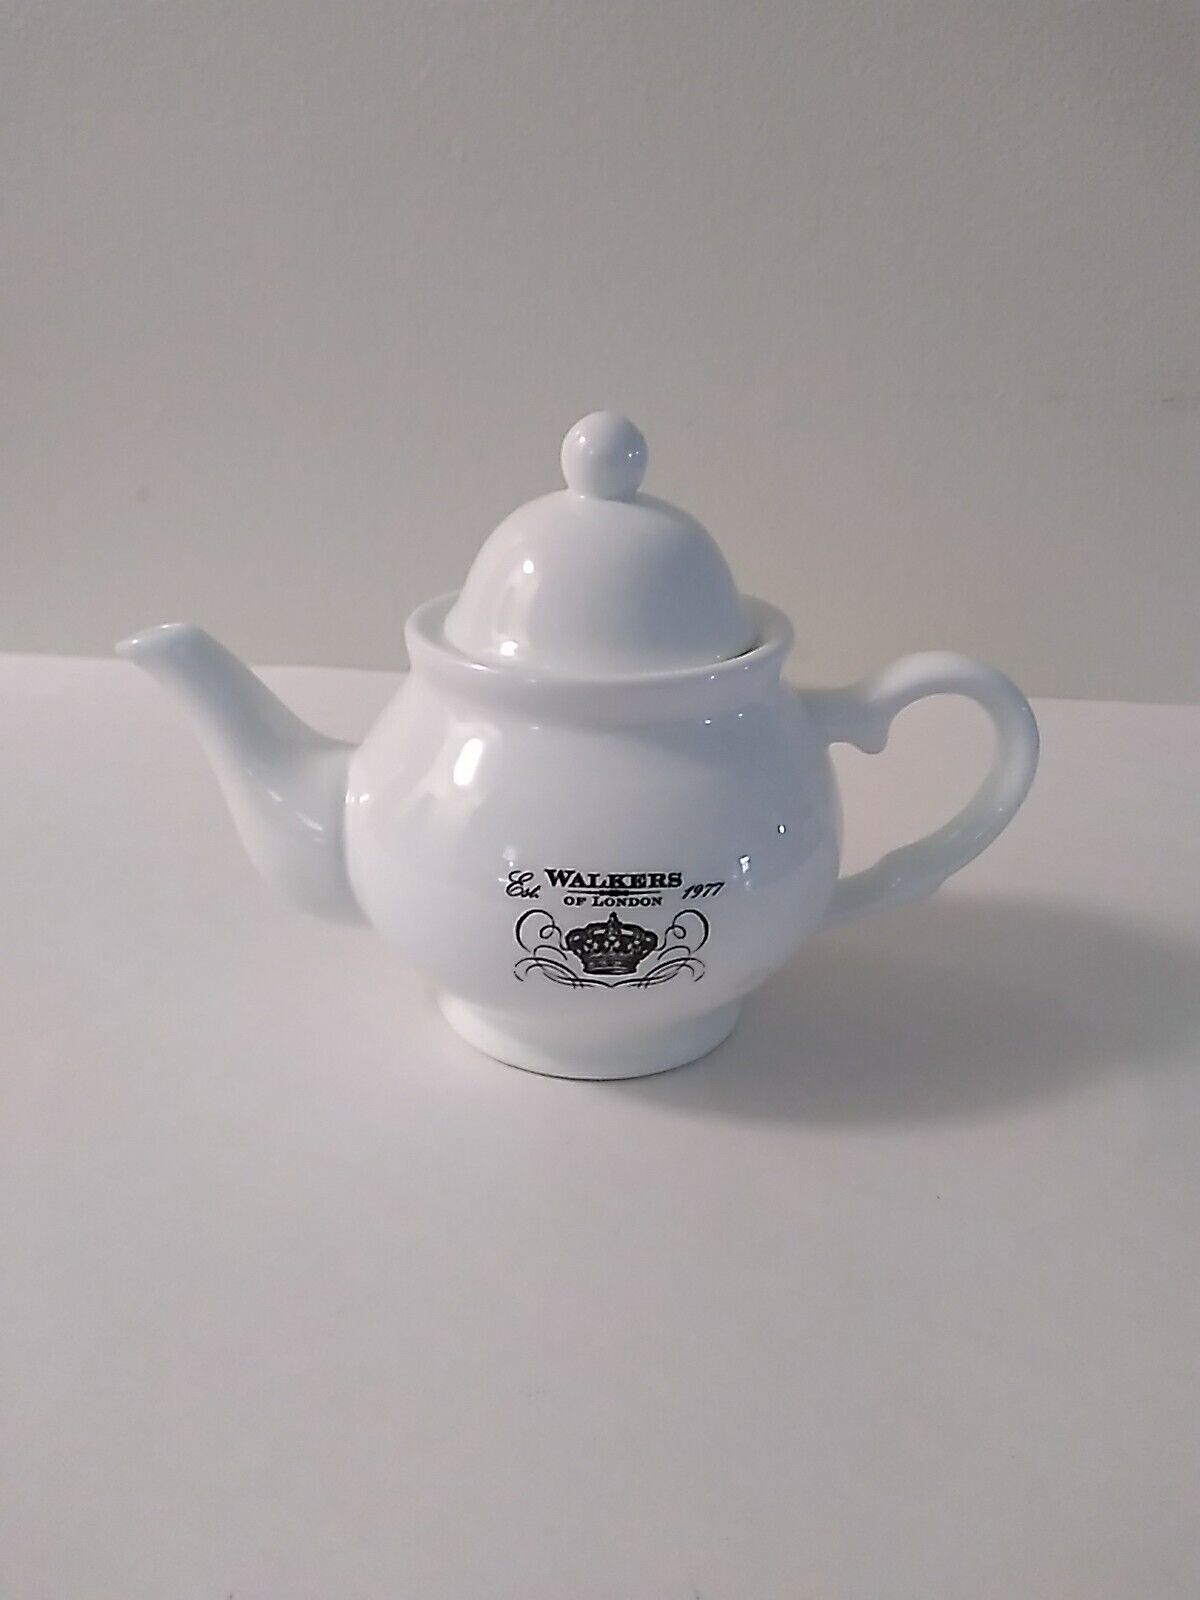 Vintage Est 1977 Walkers of London Teapot White Porcelain 